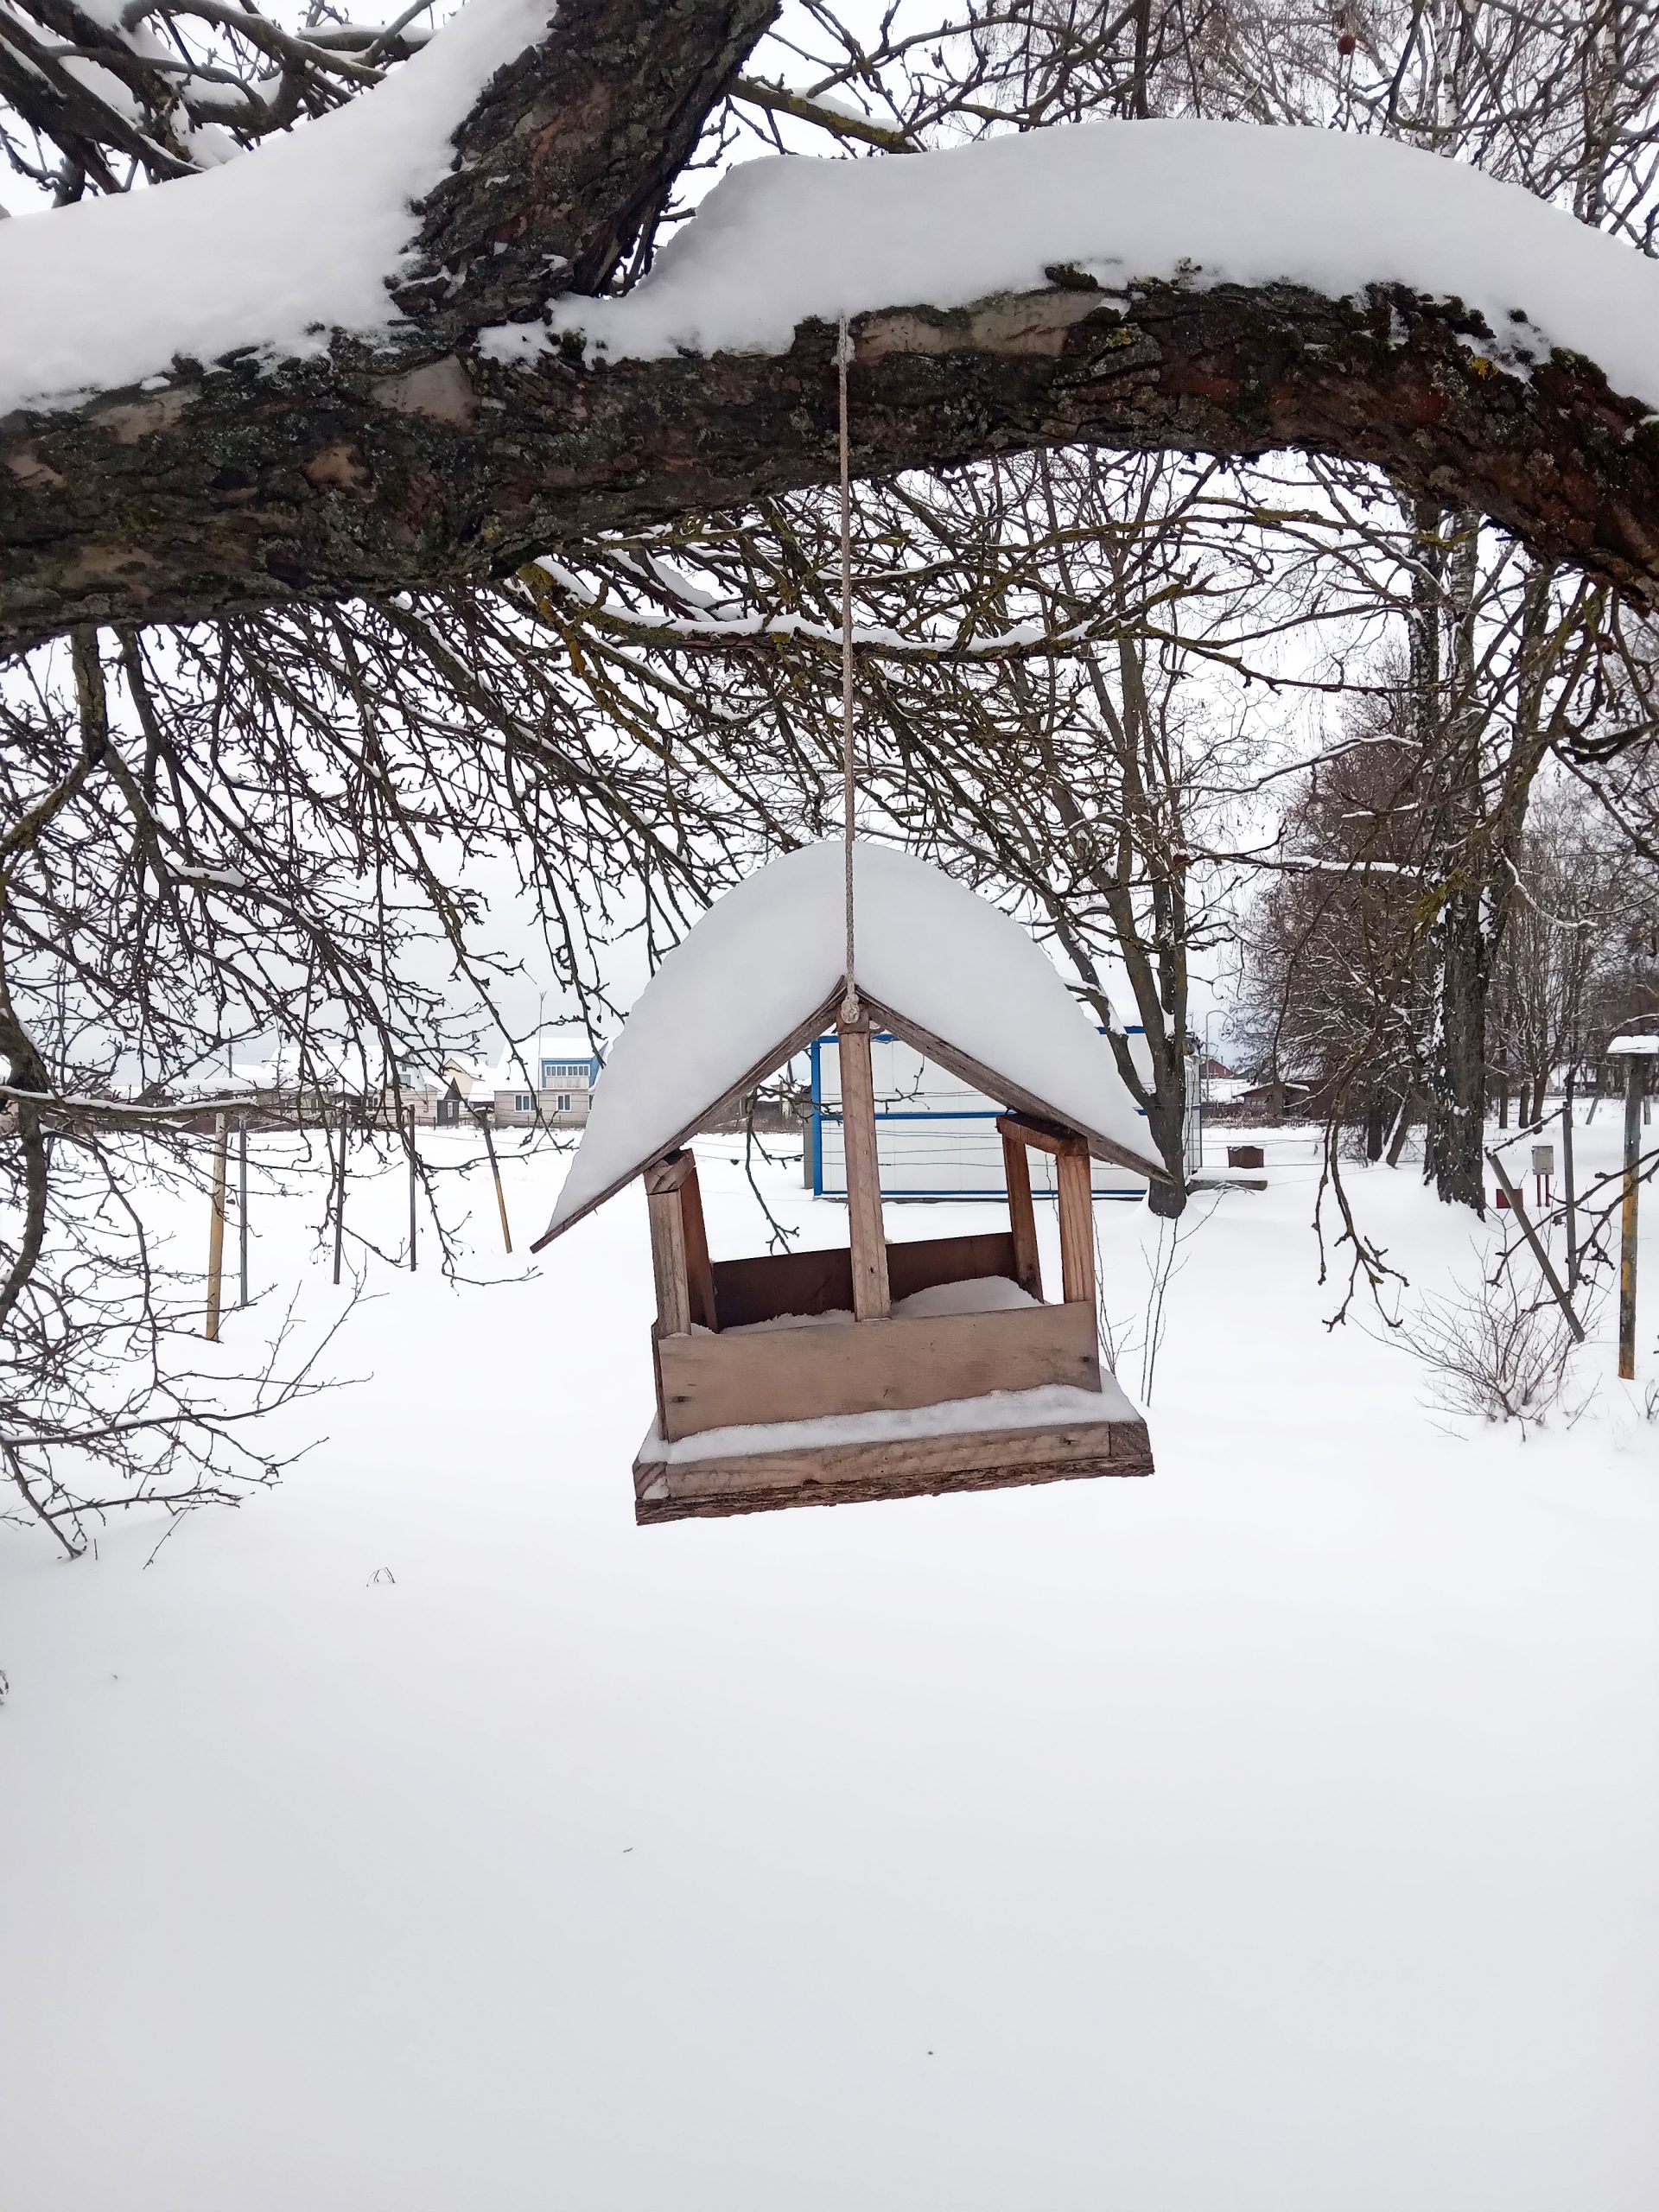 От 70 до 130% декадной нормы снега выпало за сутки в Могилевской области